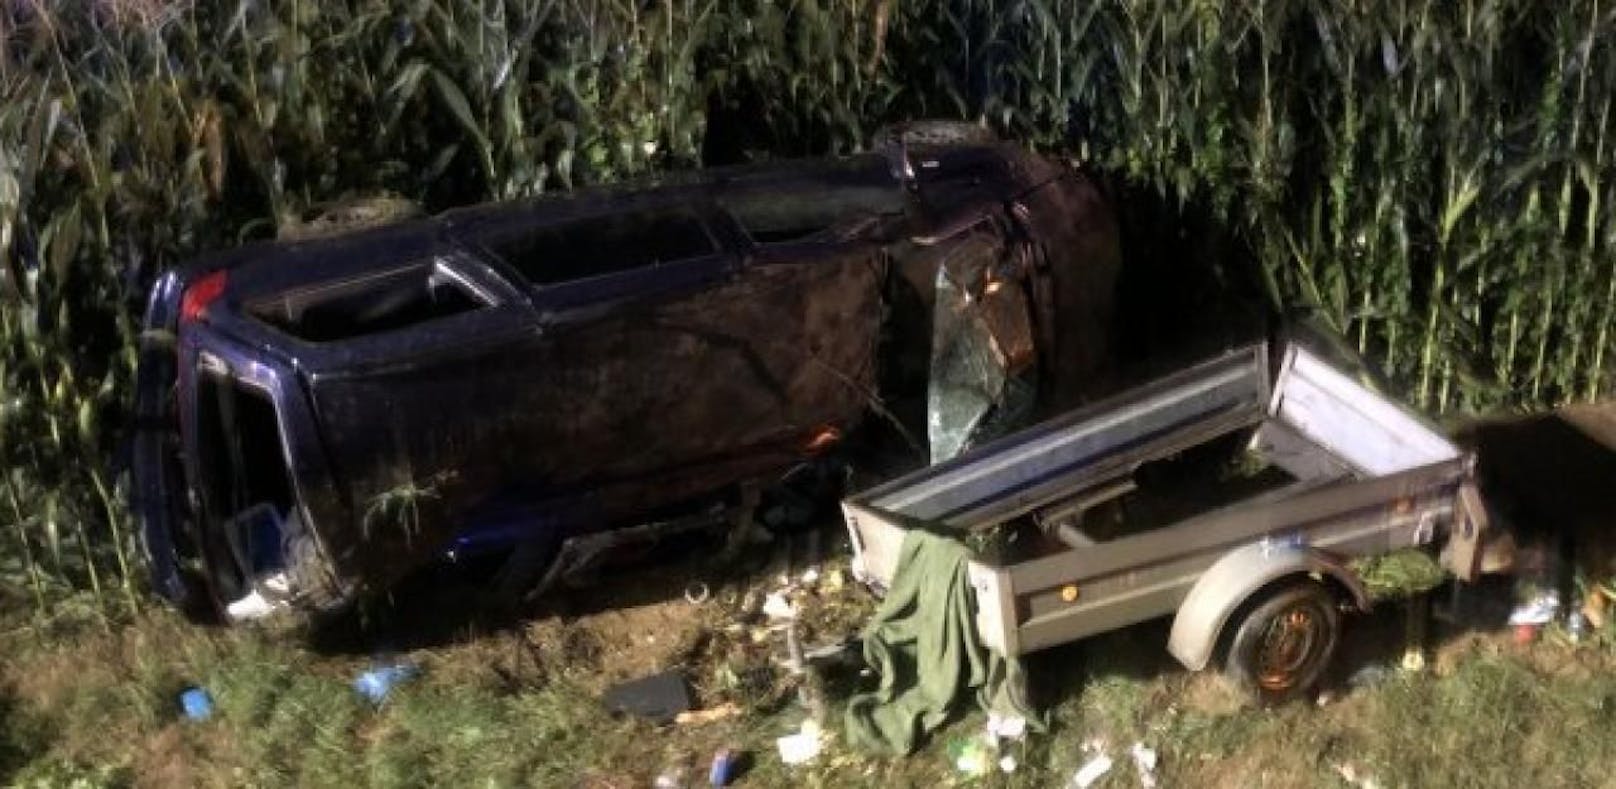 Pkw bei Crash in Maisfeld katapultiert – 7 Verletzte